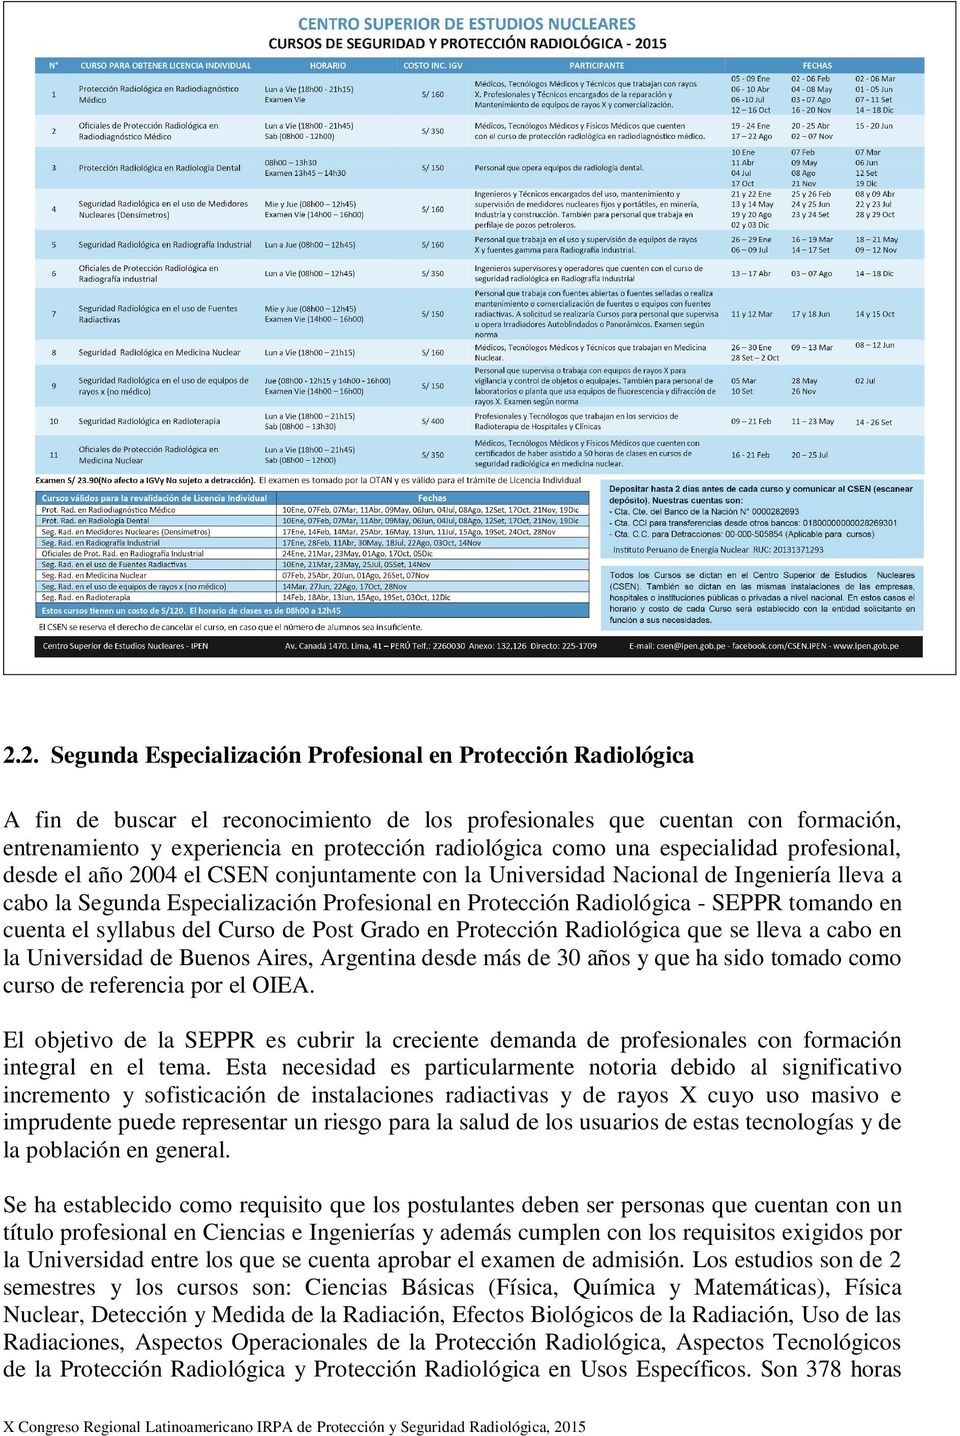 Radiológica - SEPPR tomando en cuenta el syllabus del Curso de Post Grado en Protección Radiológica que se lleva a cabo en la Universidad de Buenos Aires, Argentina desde más de 30 años y que ha sido